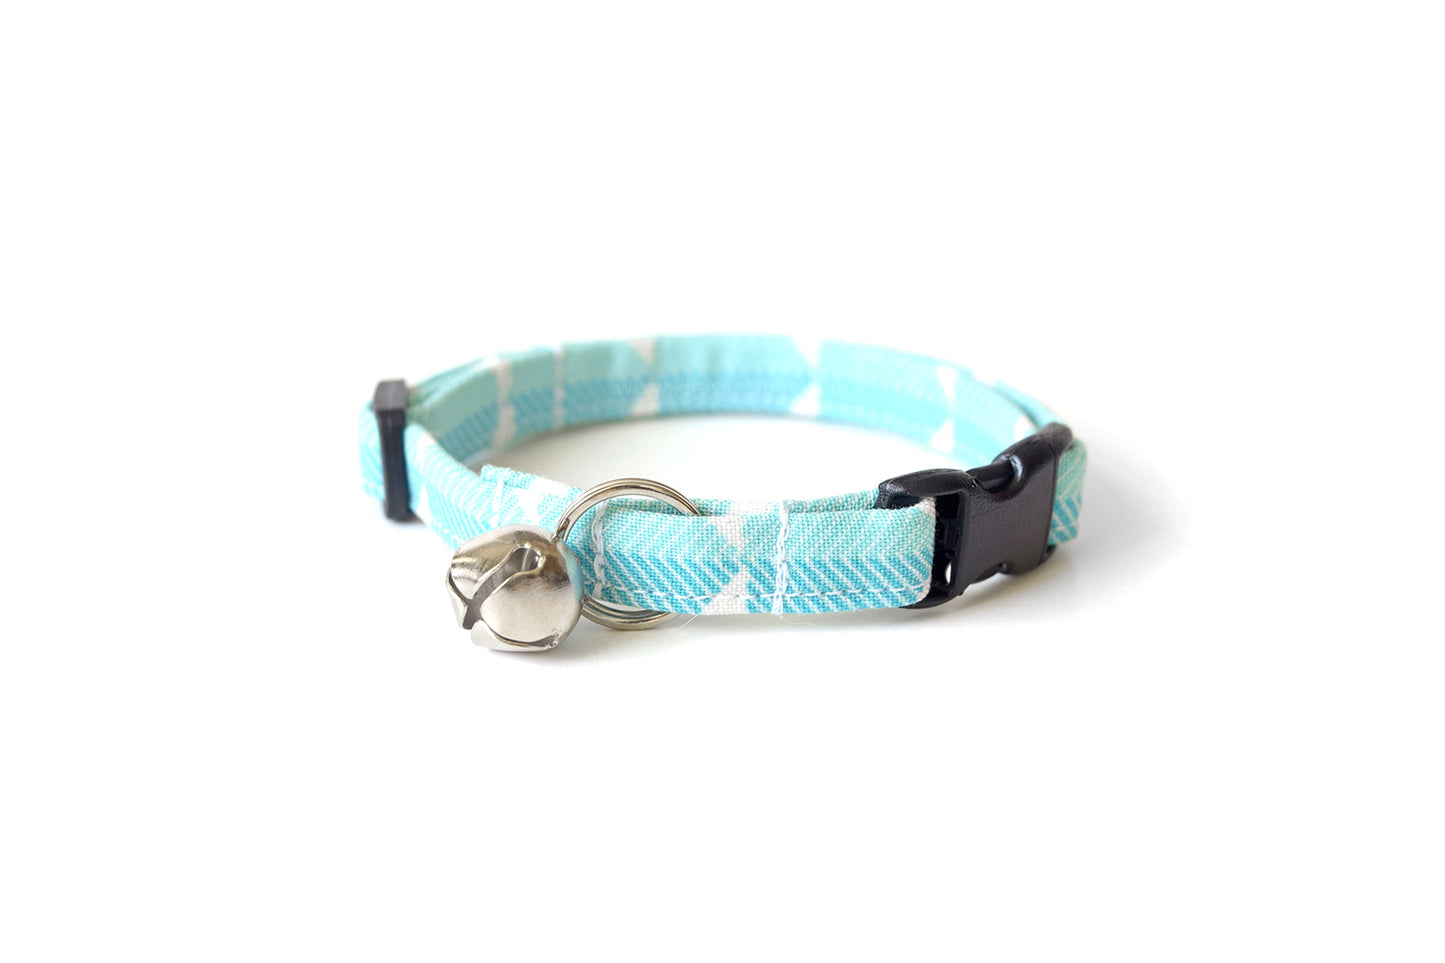 Teal Blue Cat Collar - Modern Light Blue & White Breakaway Cat Collar - Handmade by Kira's Pet Shop